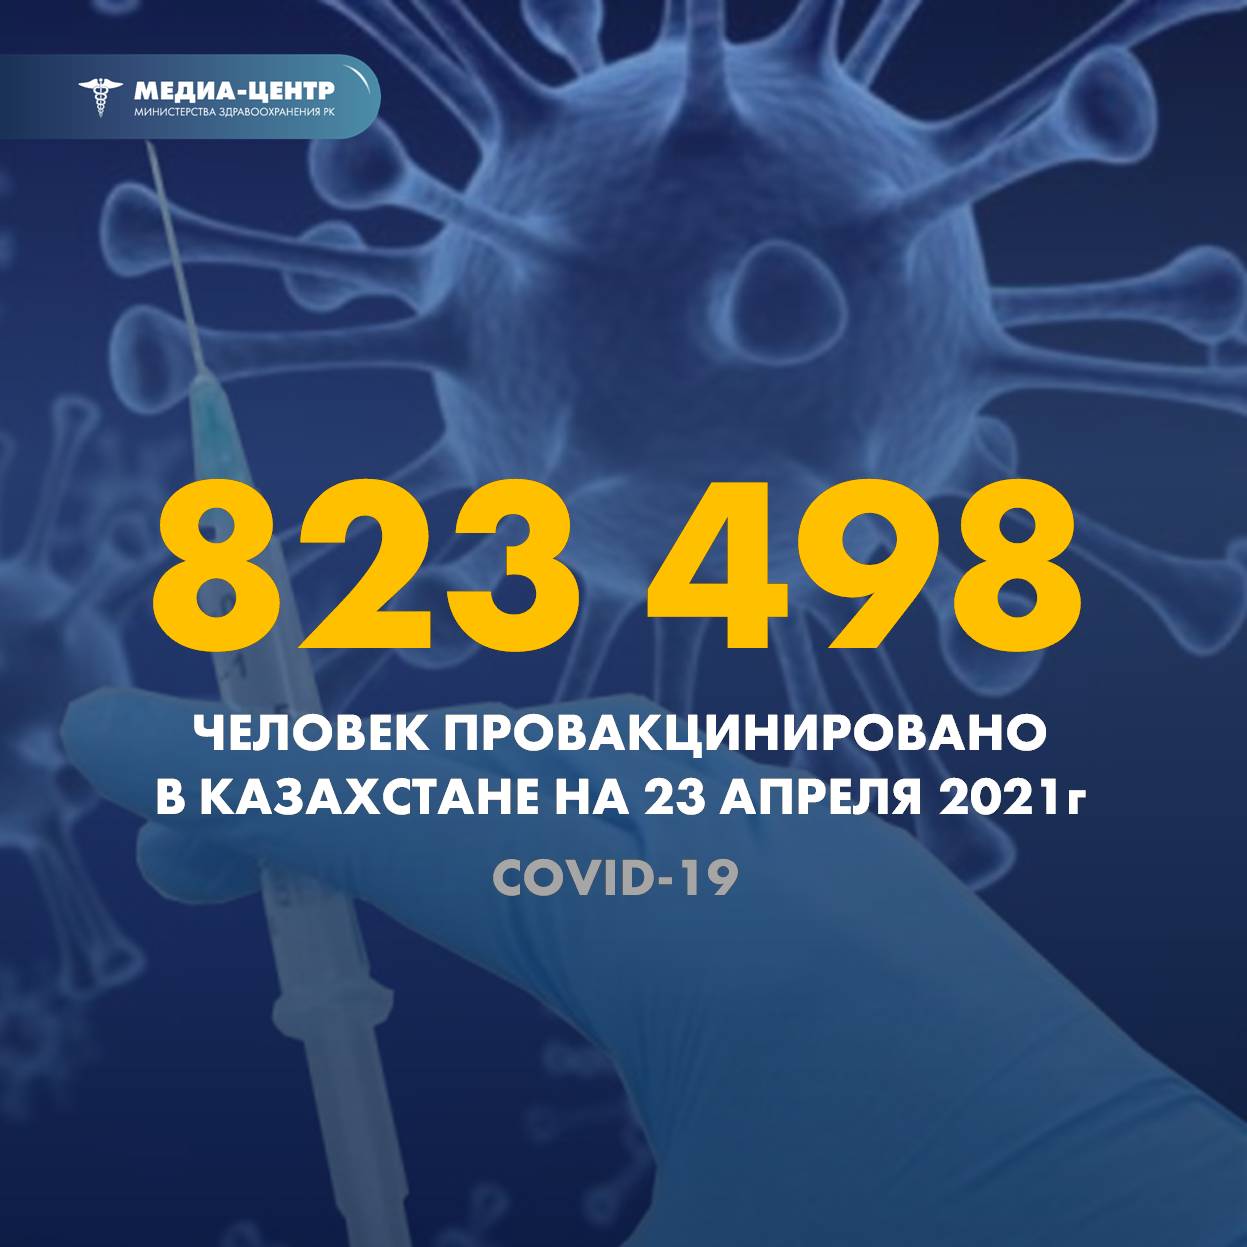 Вакцинация против COVID-19 в Казахстане: эксперты ответили на самые актуальные вопросы